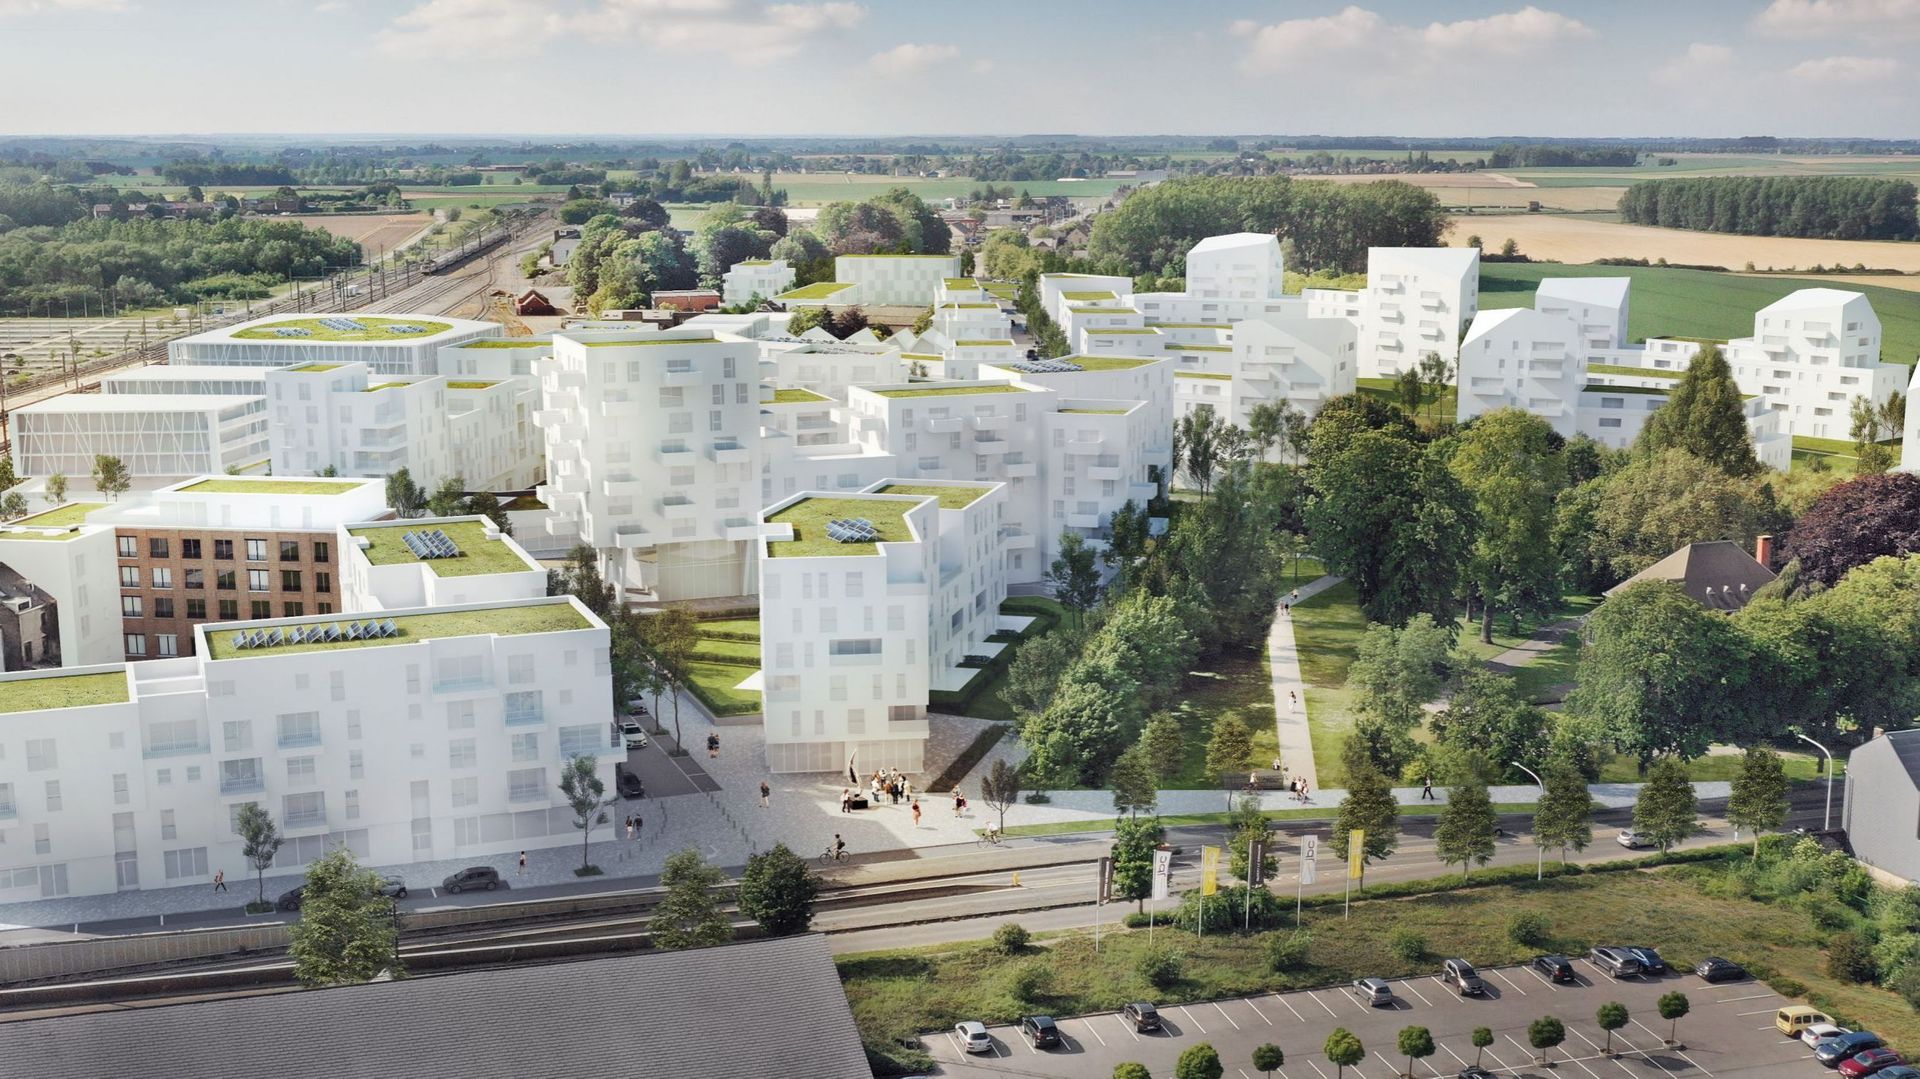 Voici ce à quoi pourrait ressembler dans le futur le quartier dit de la gare à Gembloux. On prévoit d'y construire 900 logements. Il s'agira principalement d'immeubles à appartements de 1 à 8 étages. Une école, une crèche et un parc seront également const